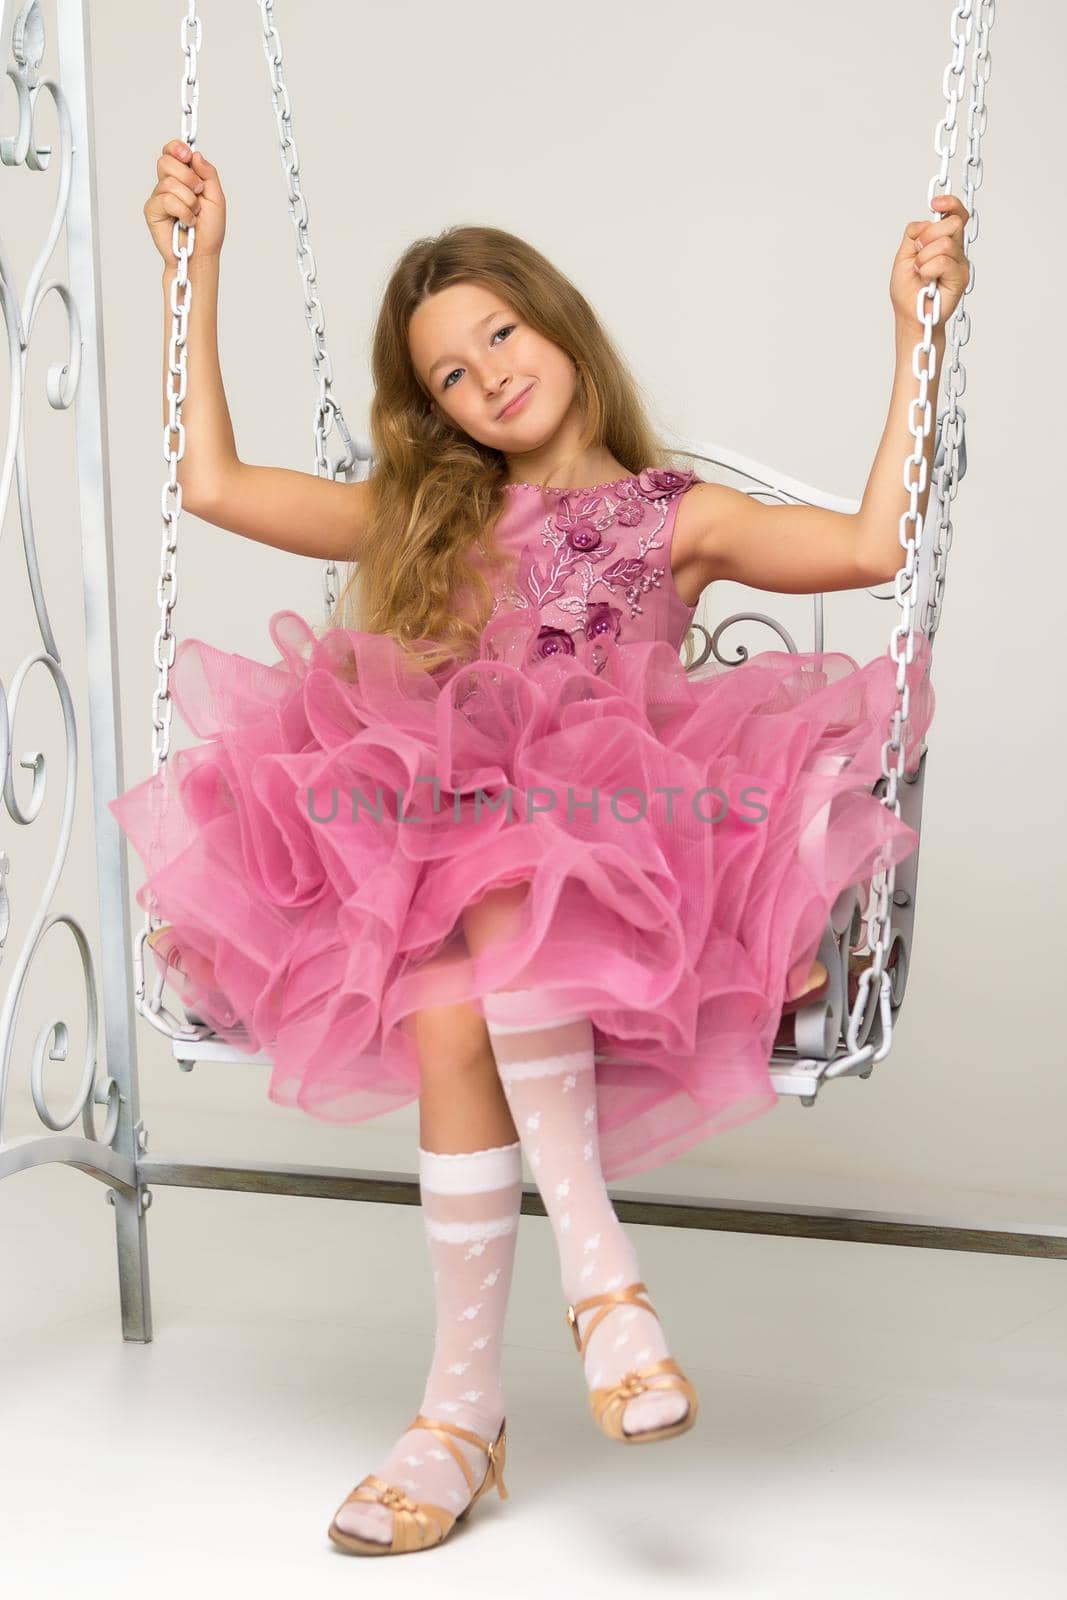 Happy little girl schoolgirl swinging on a swing. by kolesnikov_studio